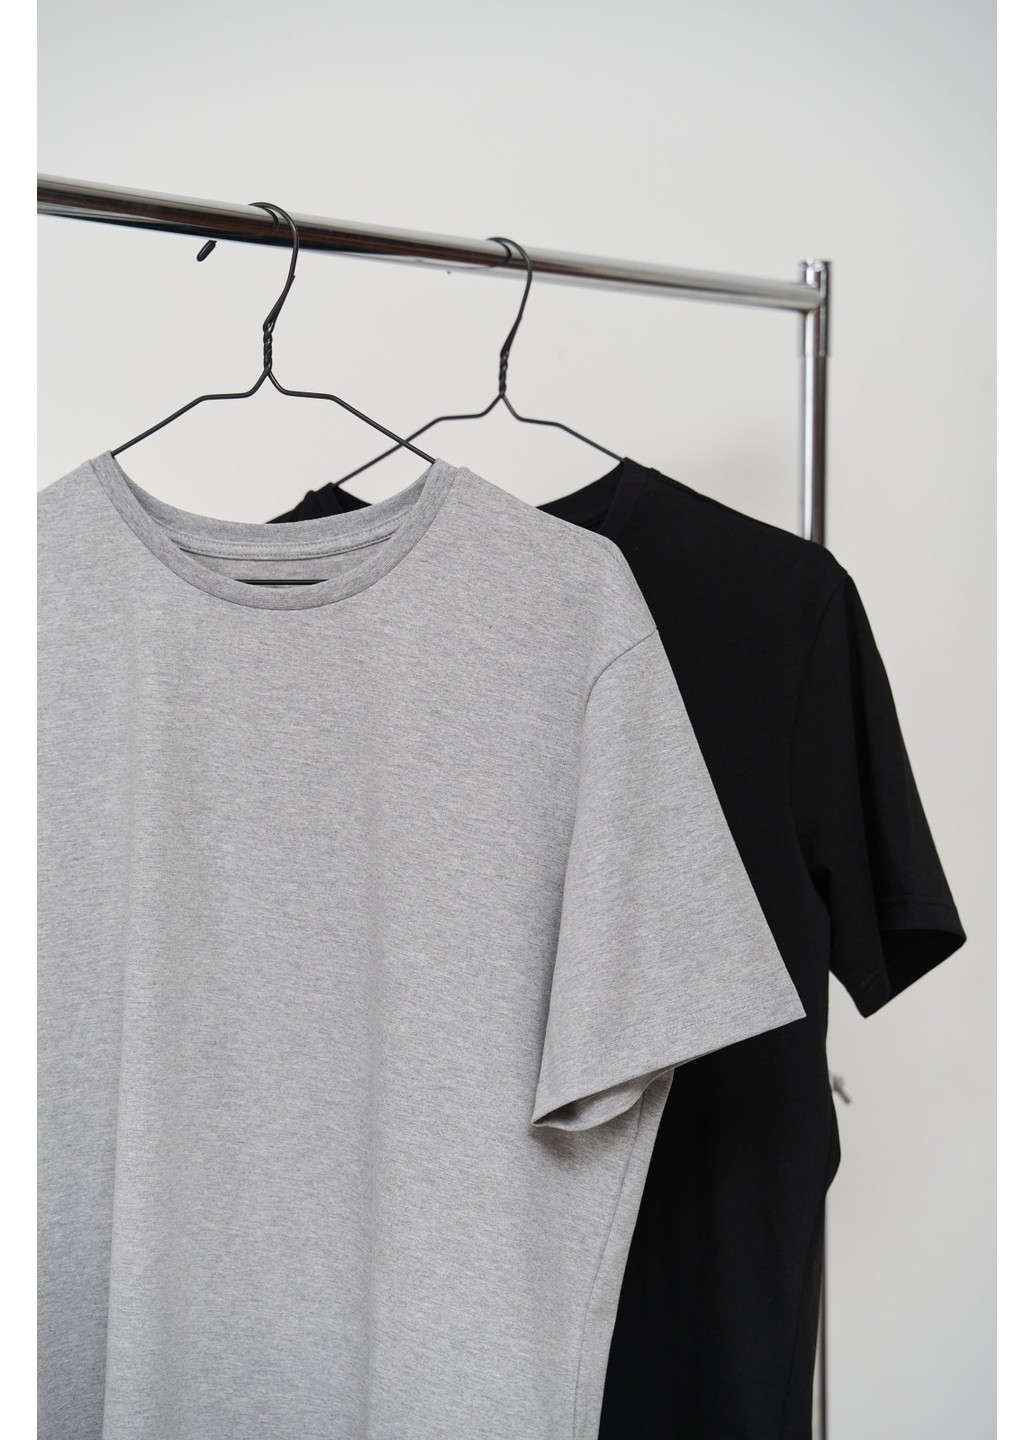 Комбинированная набор футболок мужских cotton basic 2 шт Handy Wear